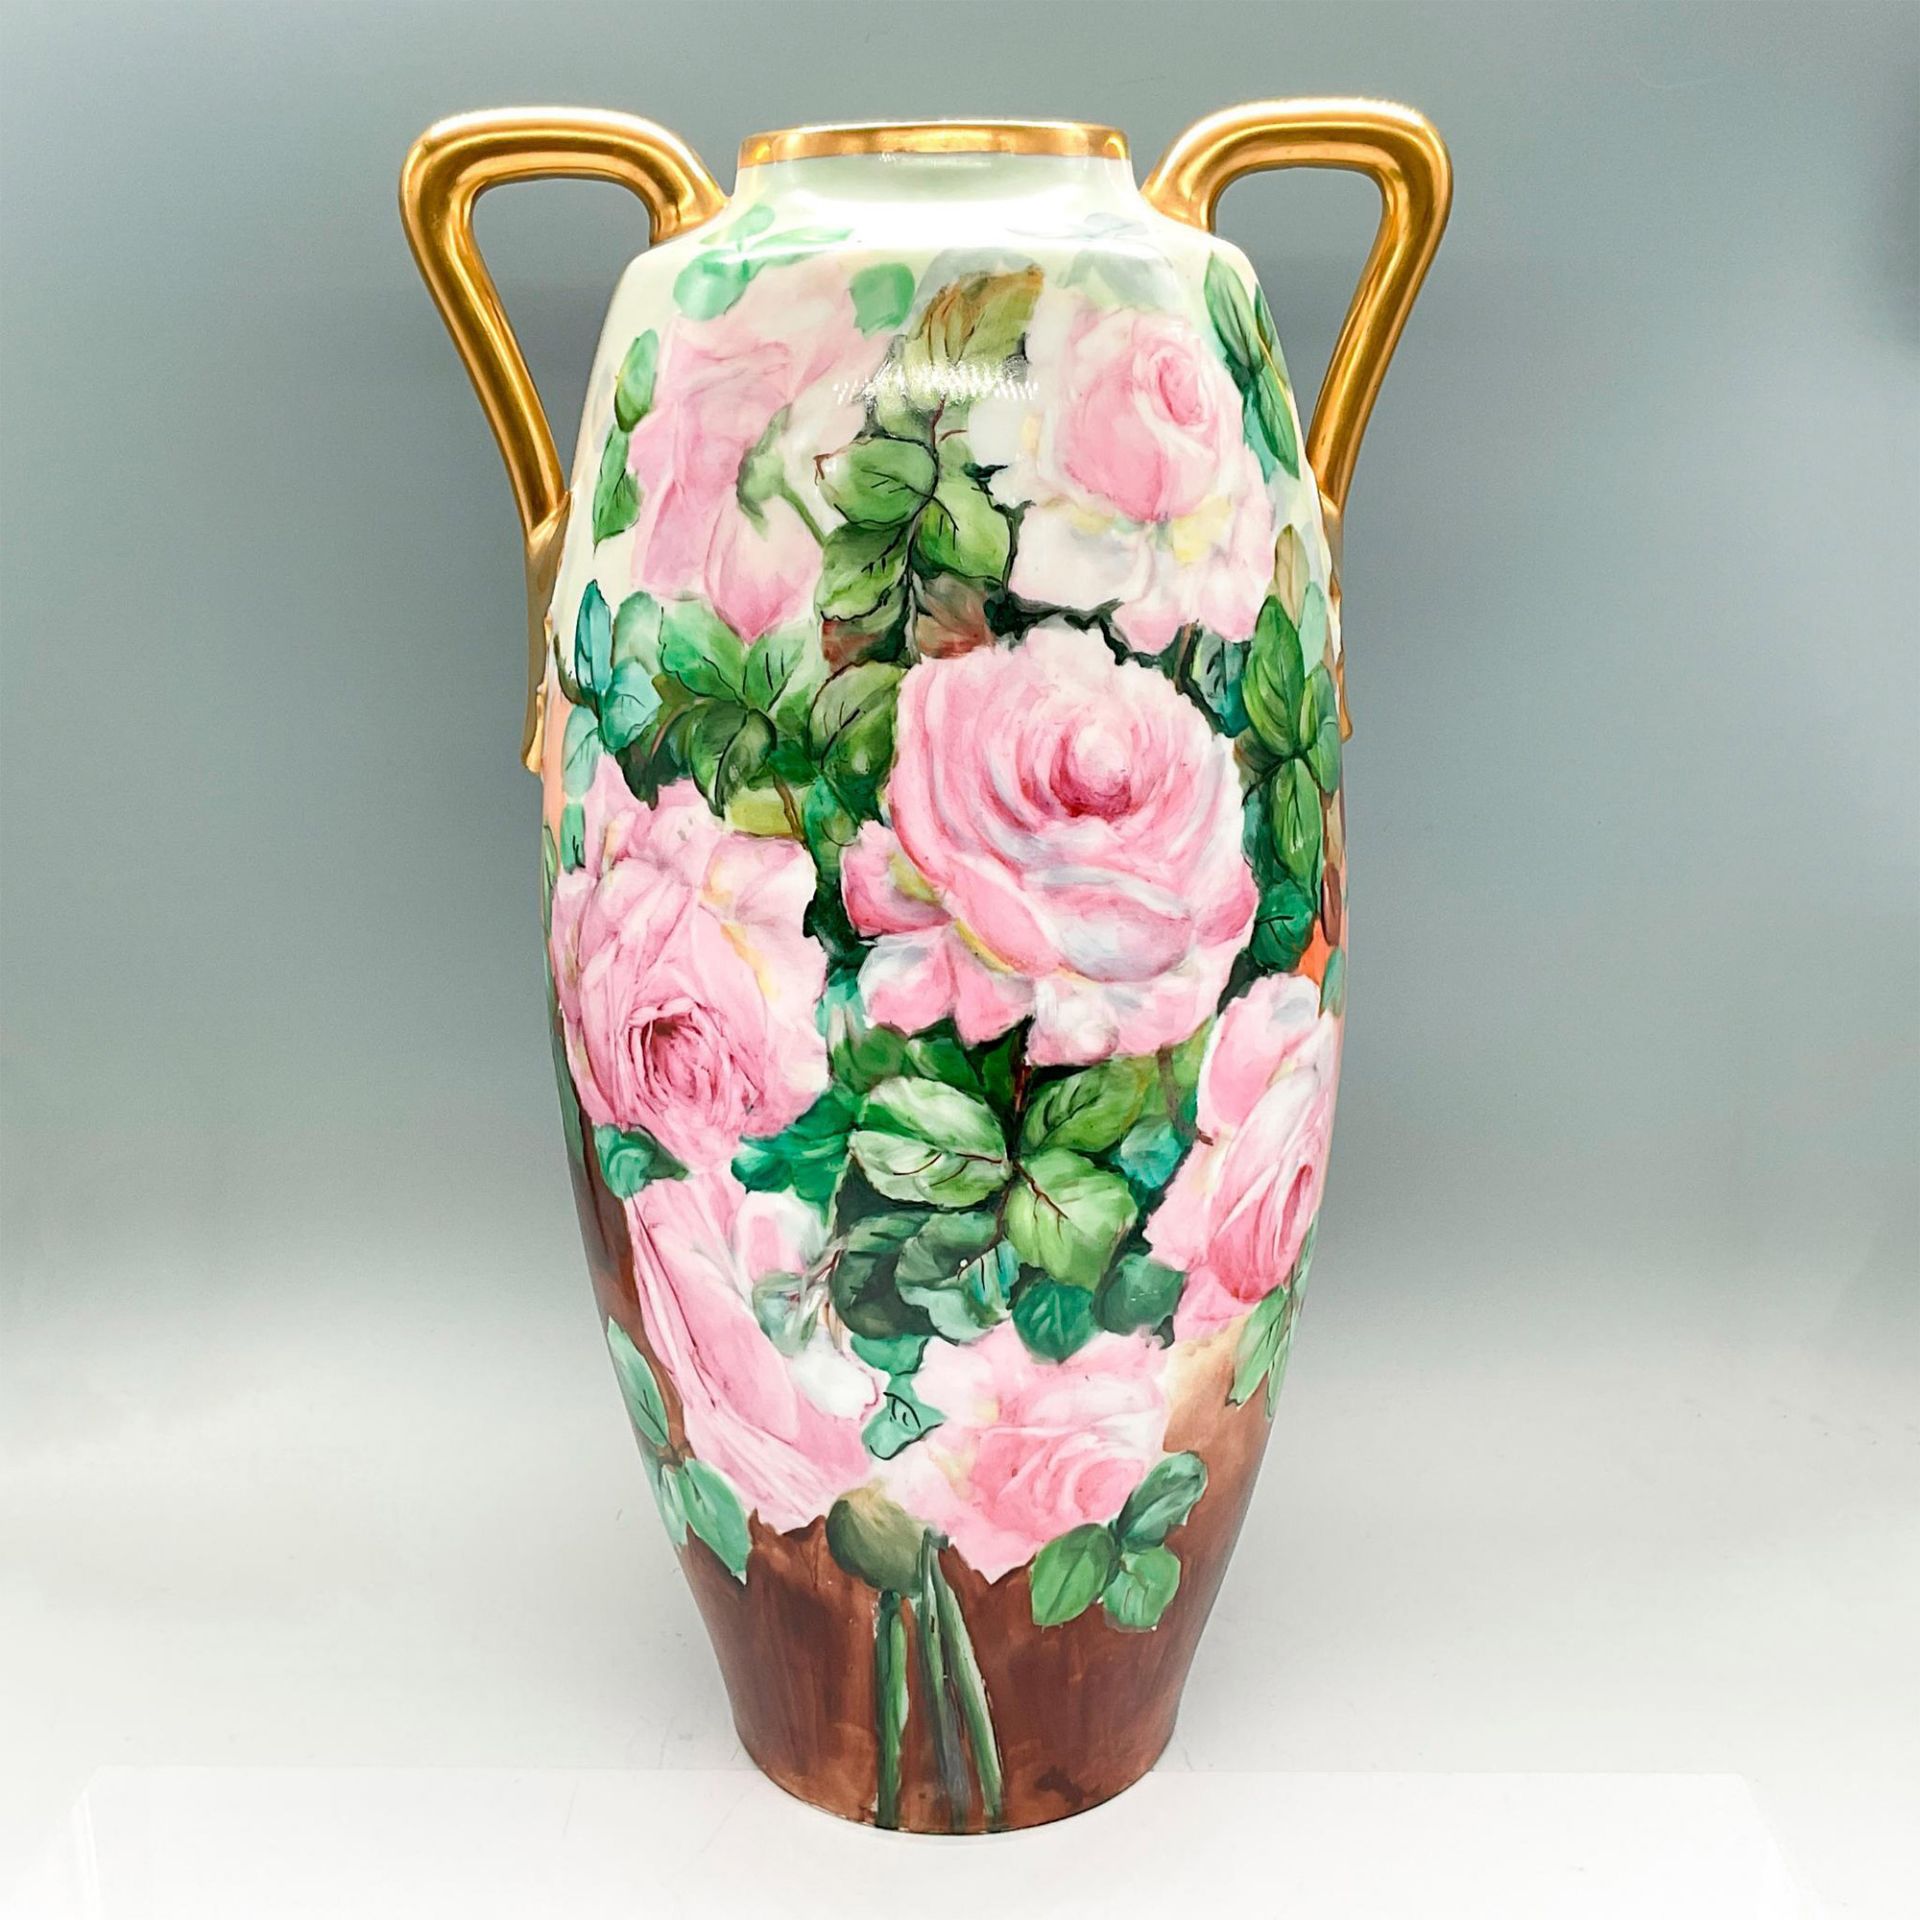 Antique Large Porcelain Amphora Vase, Roses - Image 2 of 3